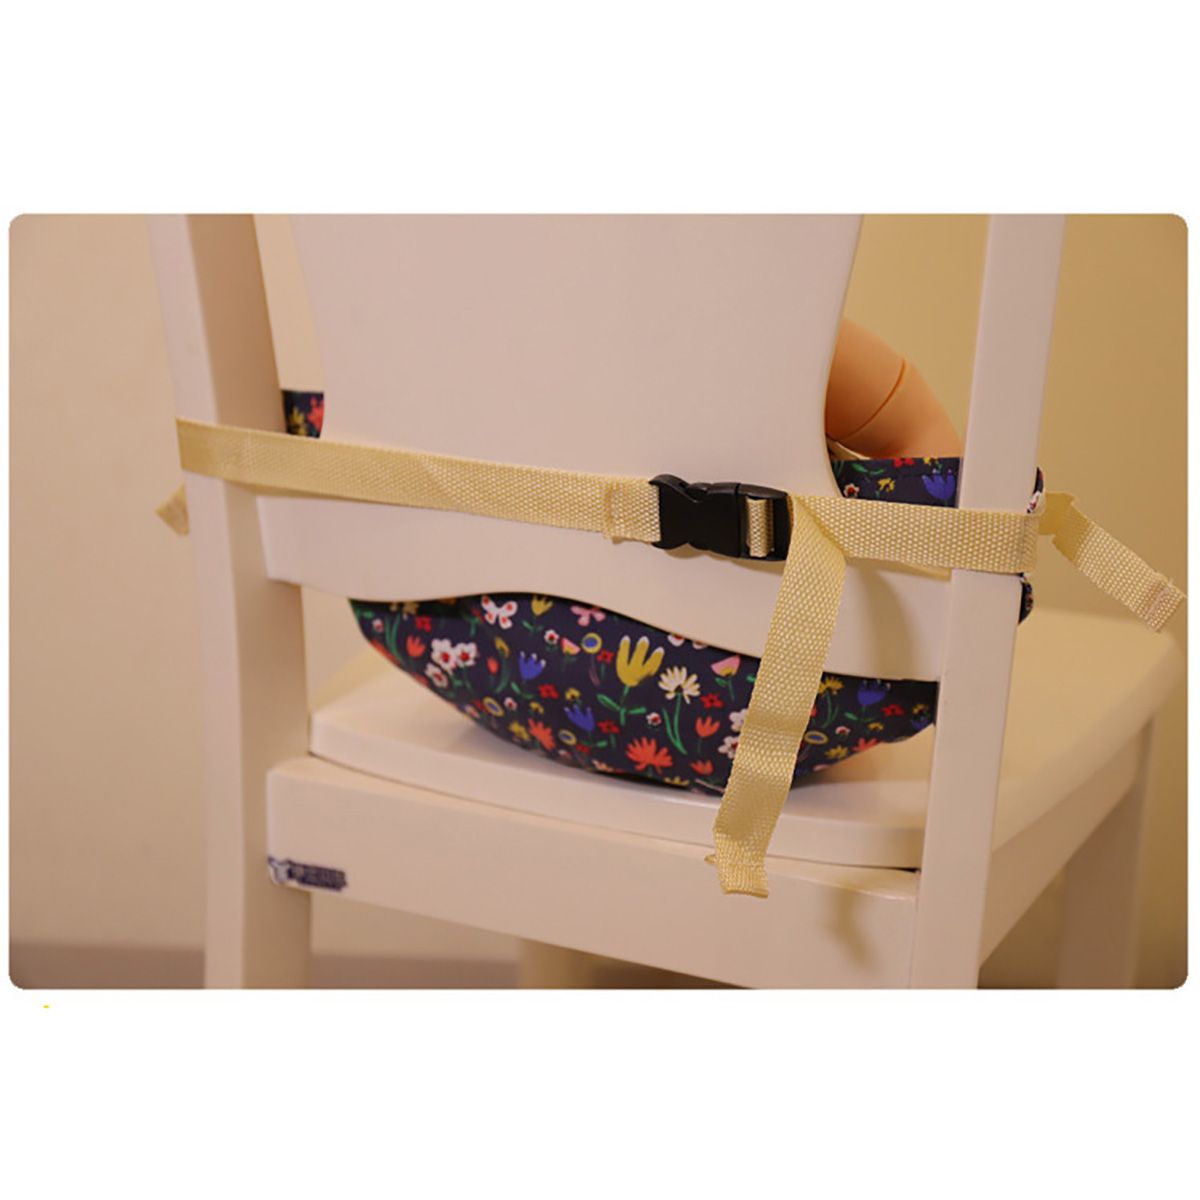 Baby-Child-Safety-Strap-Seat-Belt-Lock-Infant-Toddler-Harness-Backpack-Strap-Bag-for-Walking-1576482